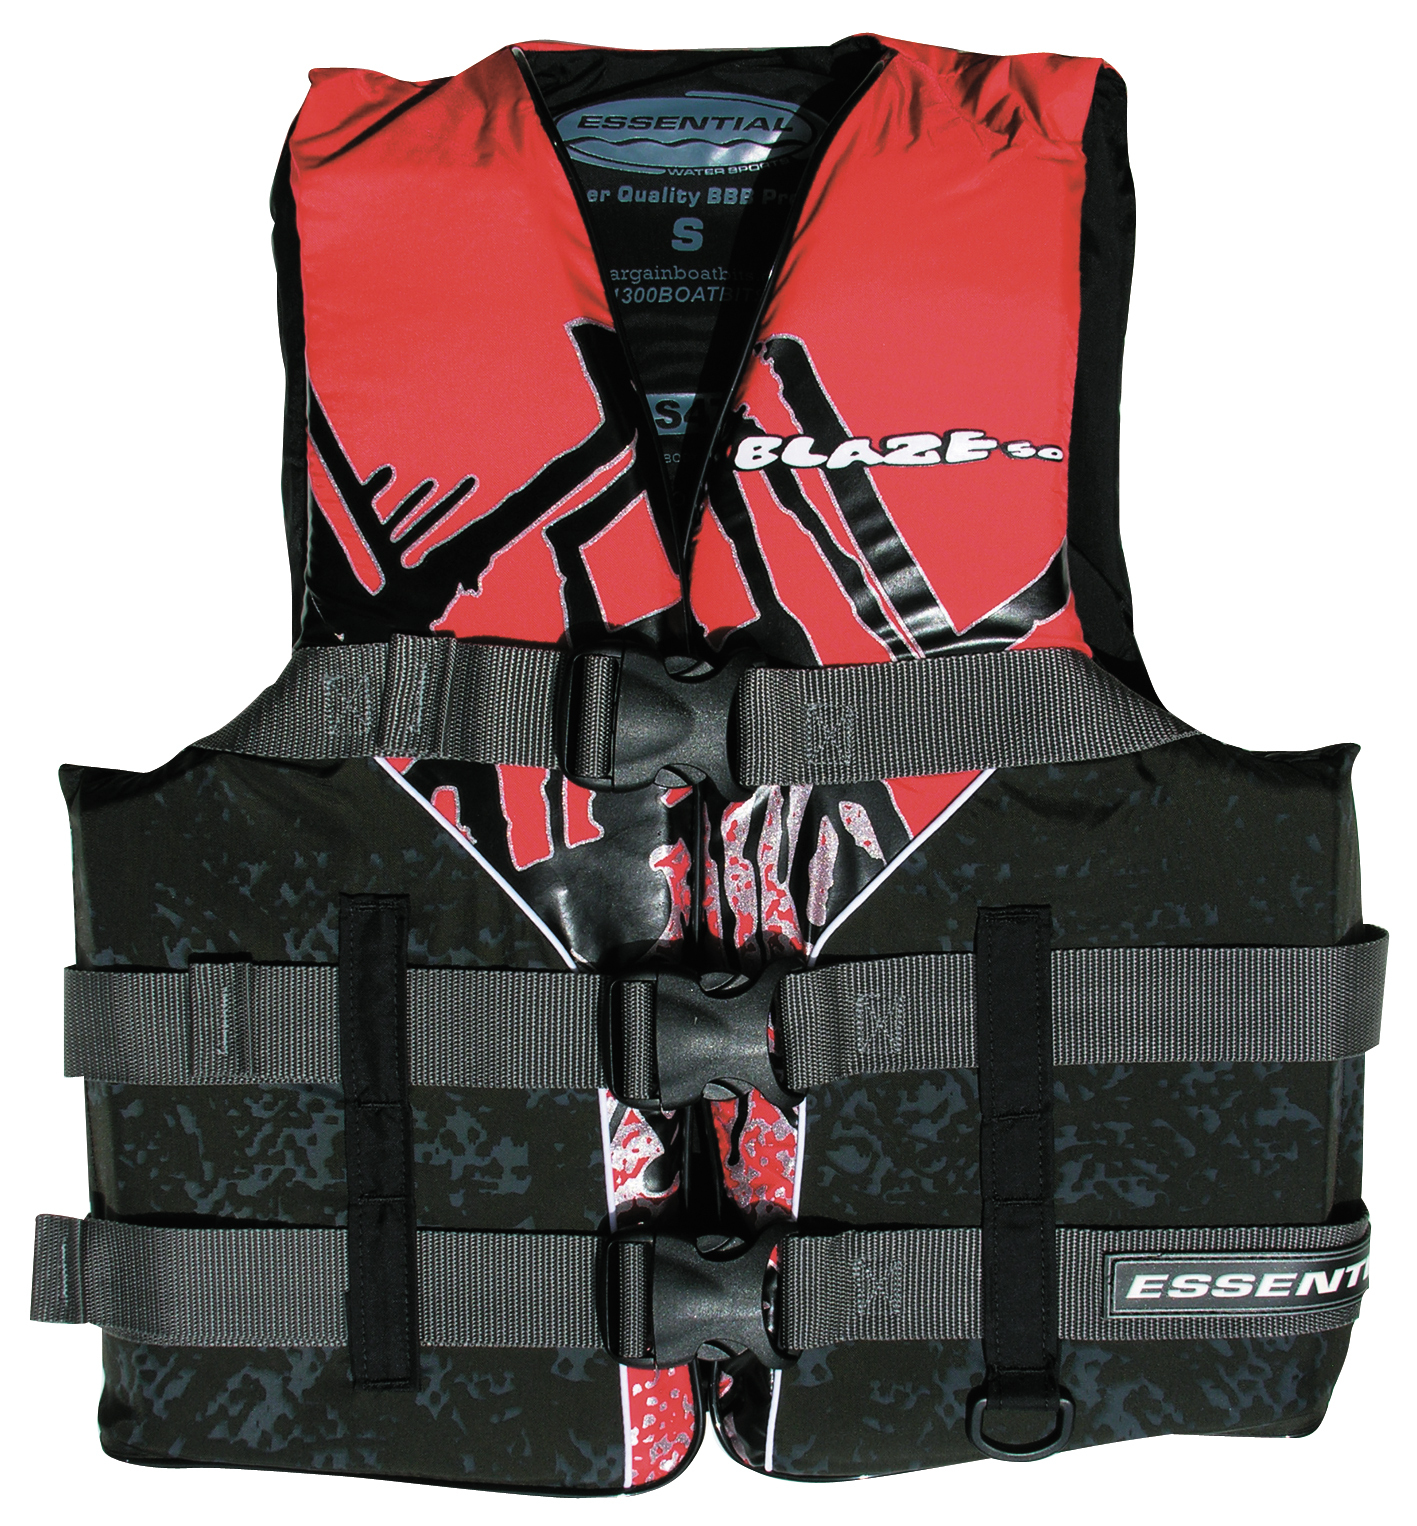 Essential Blaze L50 Adult Large Ski Vest Red